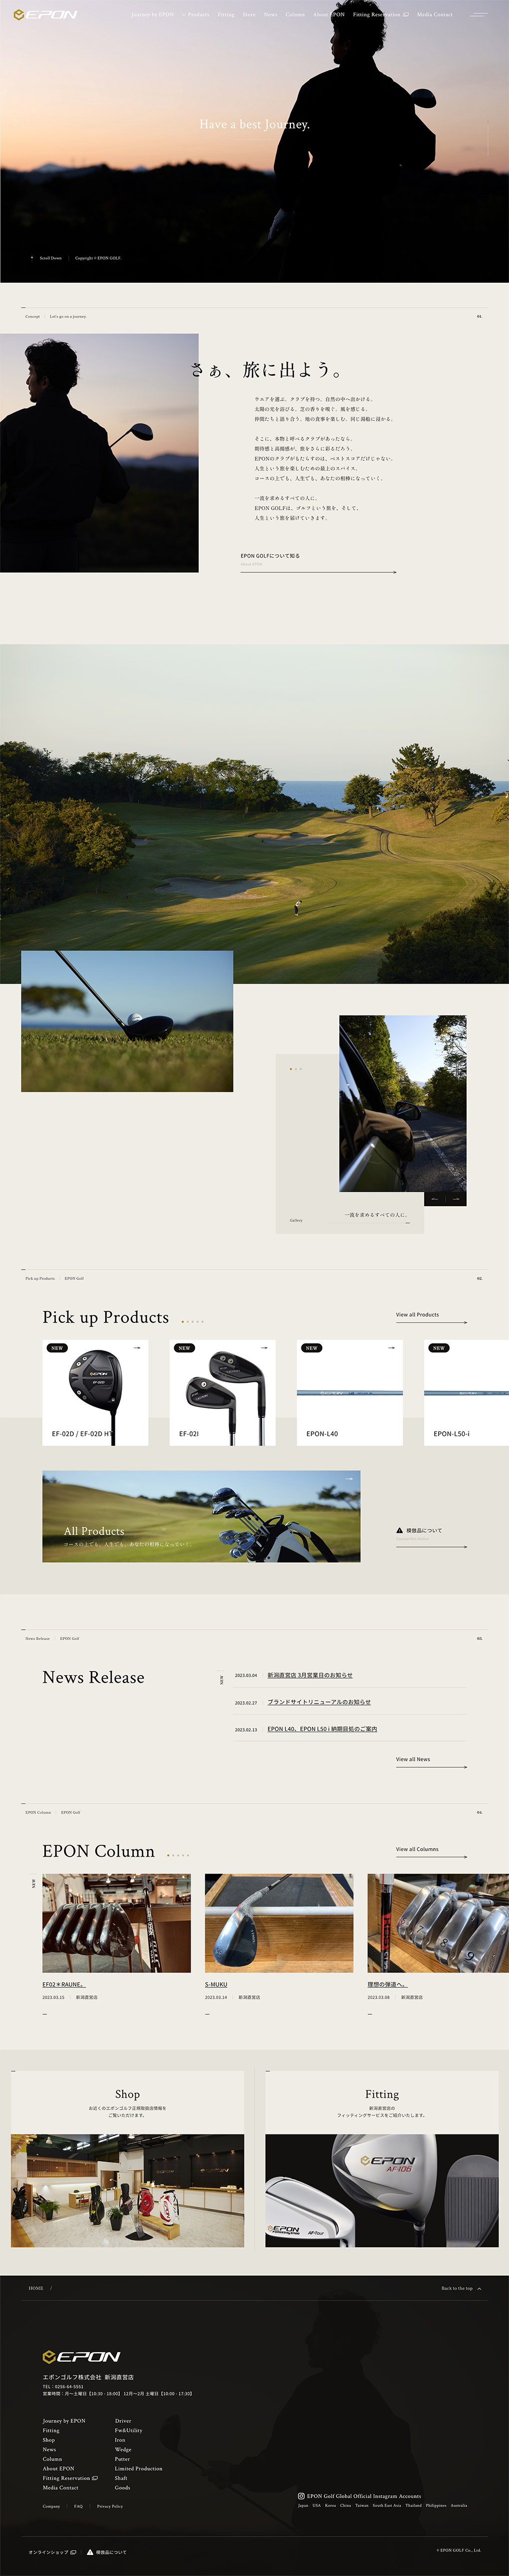 エポンゴルフ公式サイトのメイン画像が表示されています